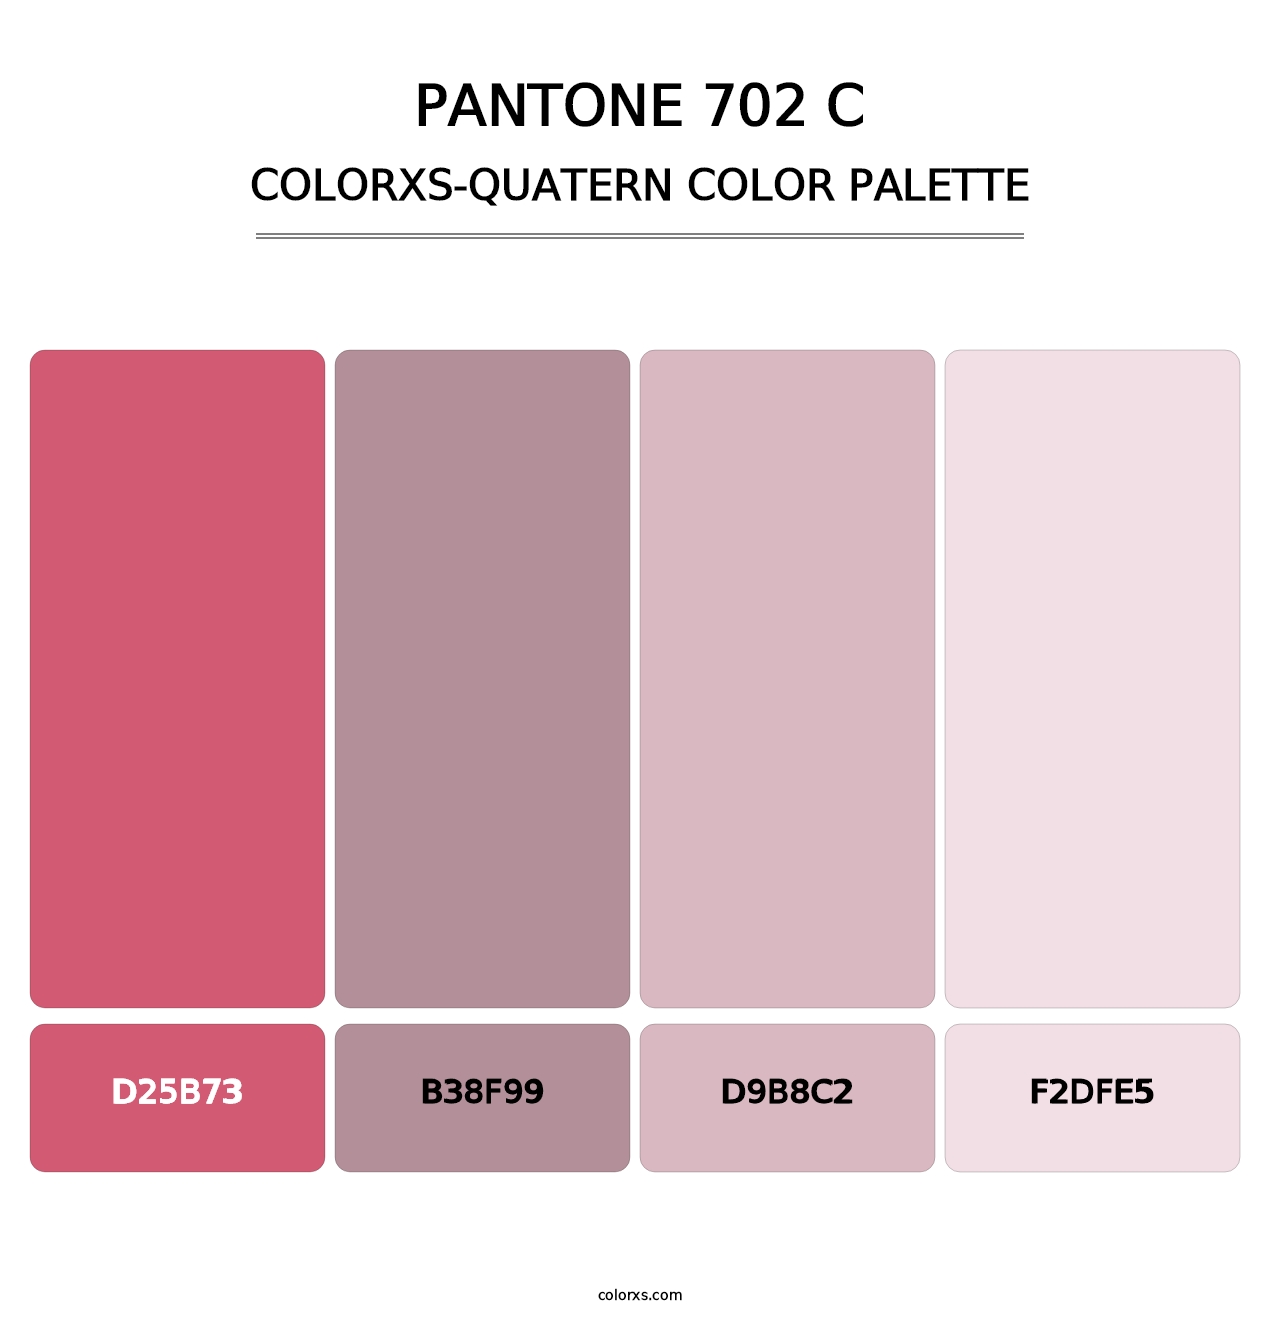 PANTONE 702 C - Colorxs Quatern Palette